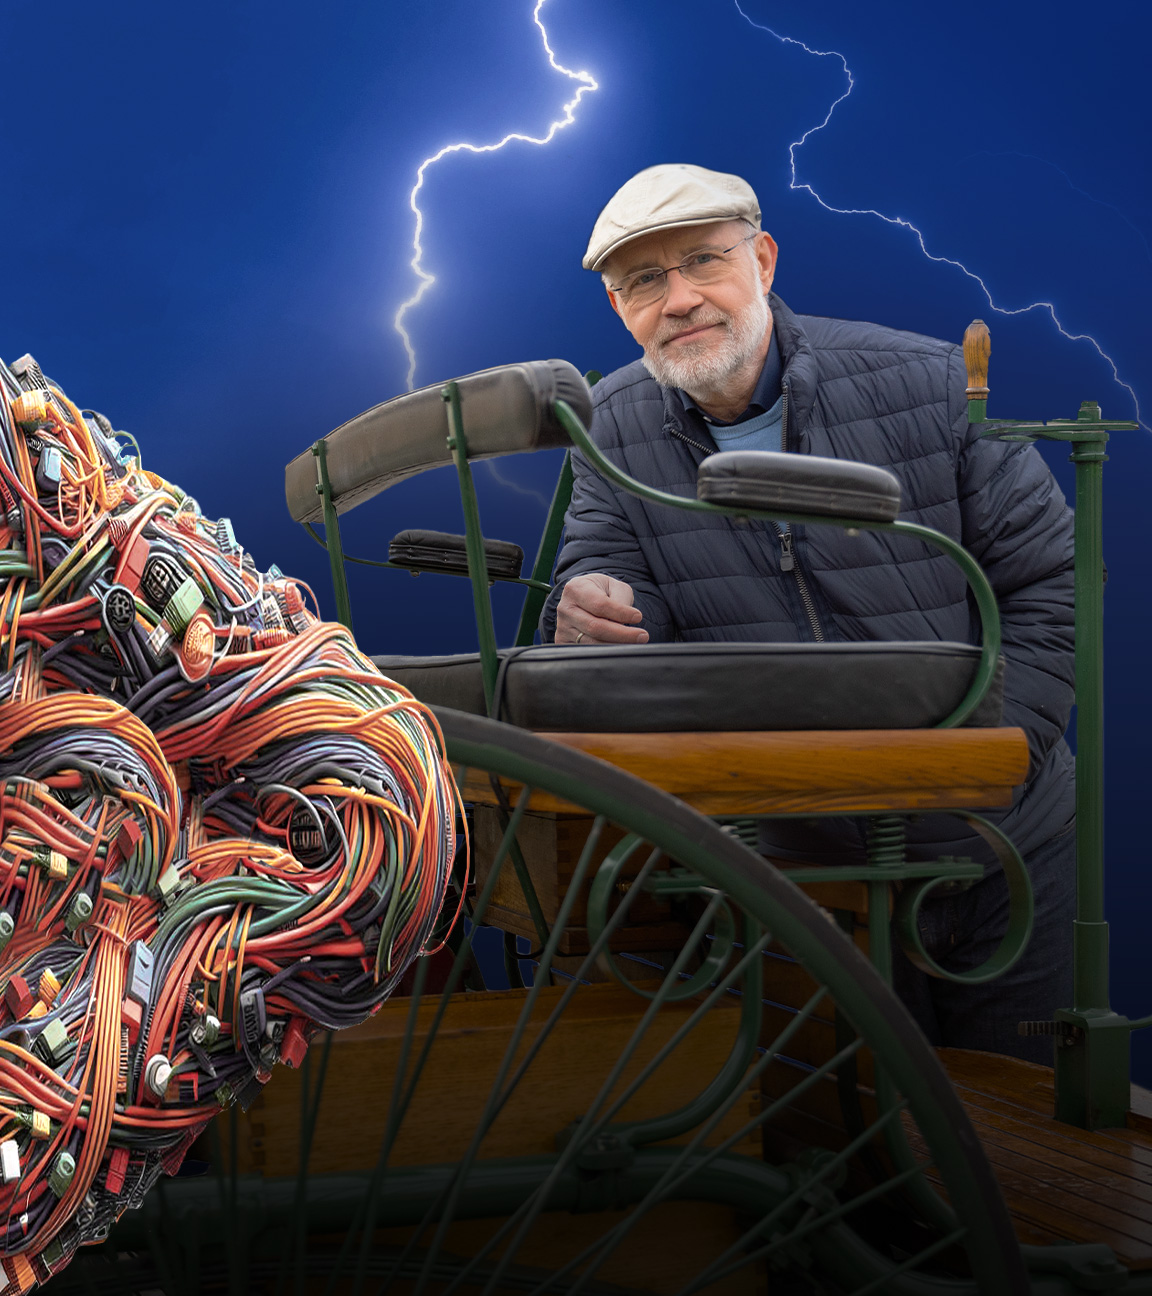 Harald Lesch steht/fährt mit einem originalen Nachbau des Patent-Motowagens von Carl Benz von 1886. Rechts im Bild deuten bunte Kabel ein X an und Biltze im Hintergrund symbolisieren Elektrizität